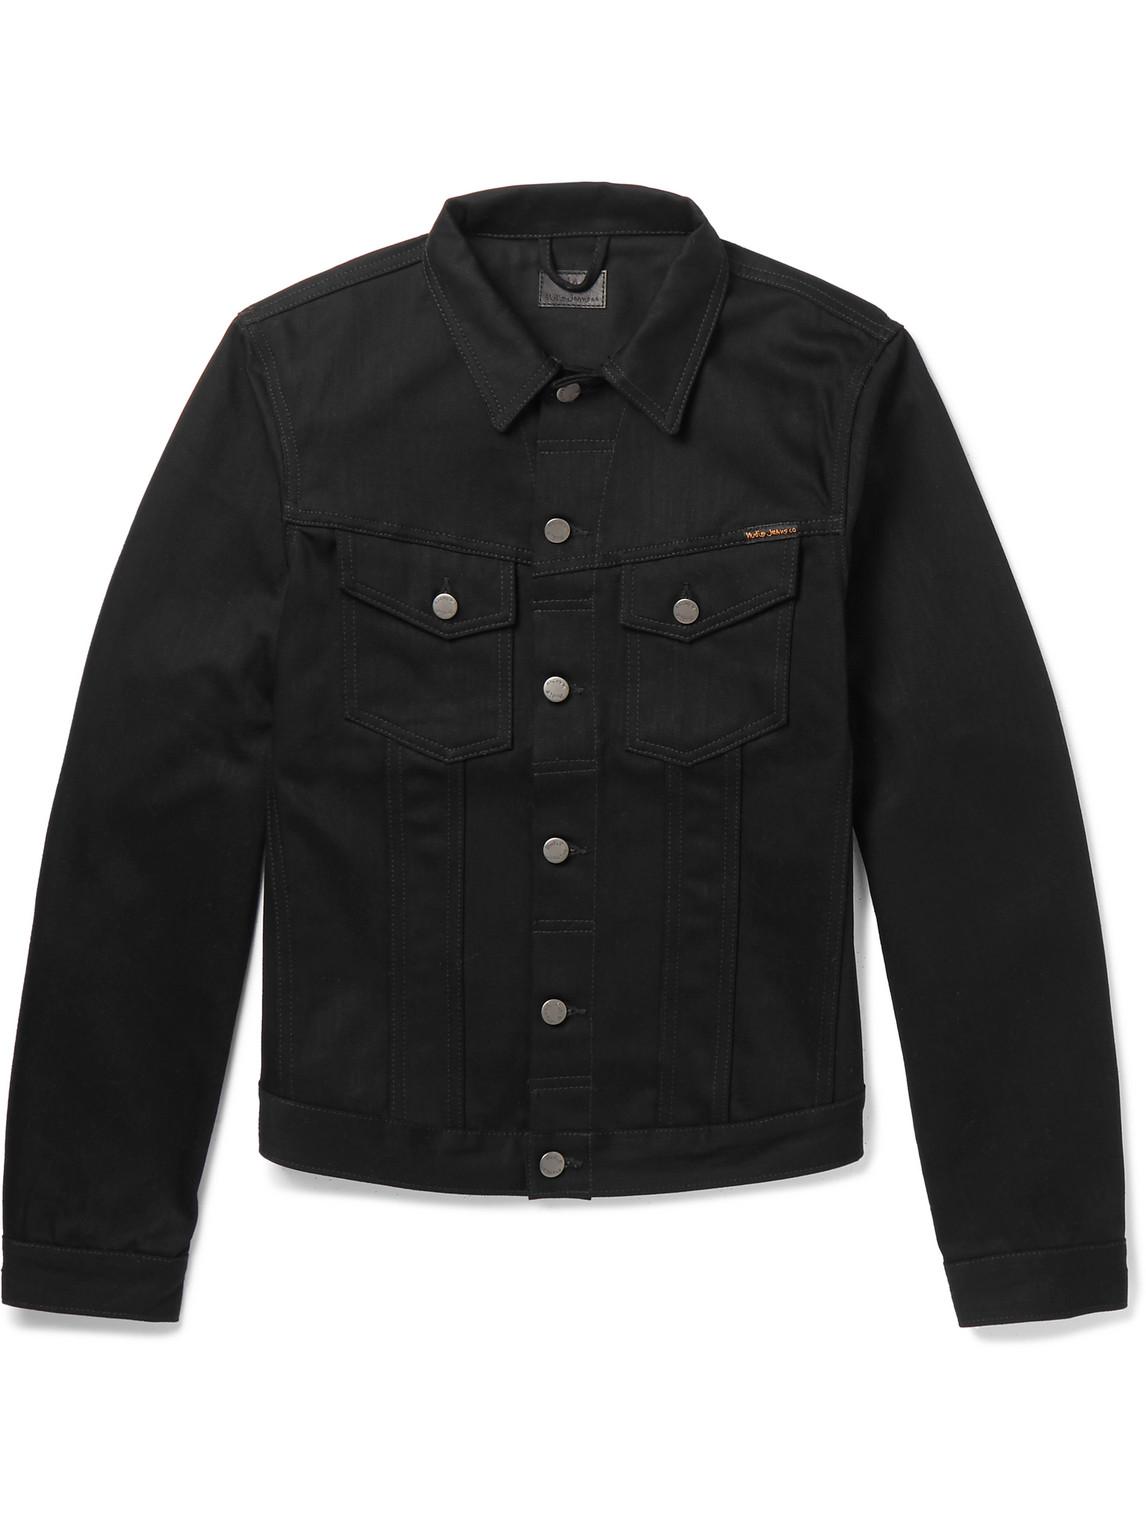 Nudie Jeans Nudie Billy Denim Jacket in Black for Men | Lyst